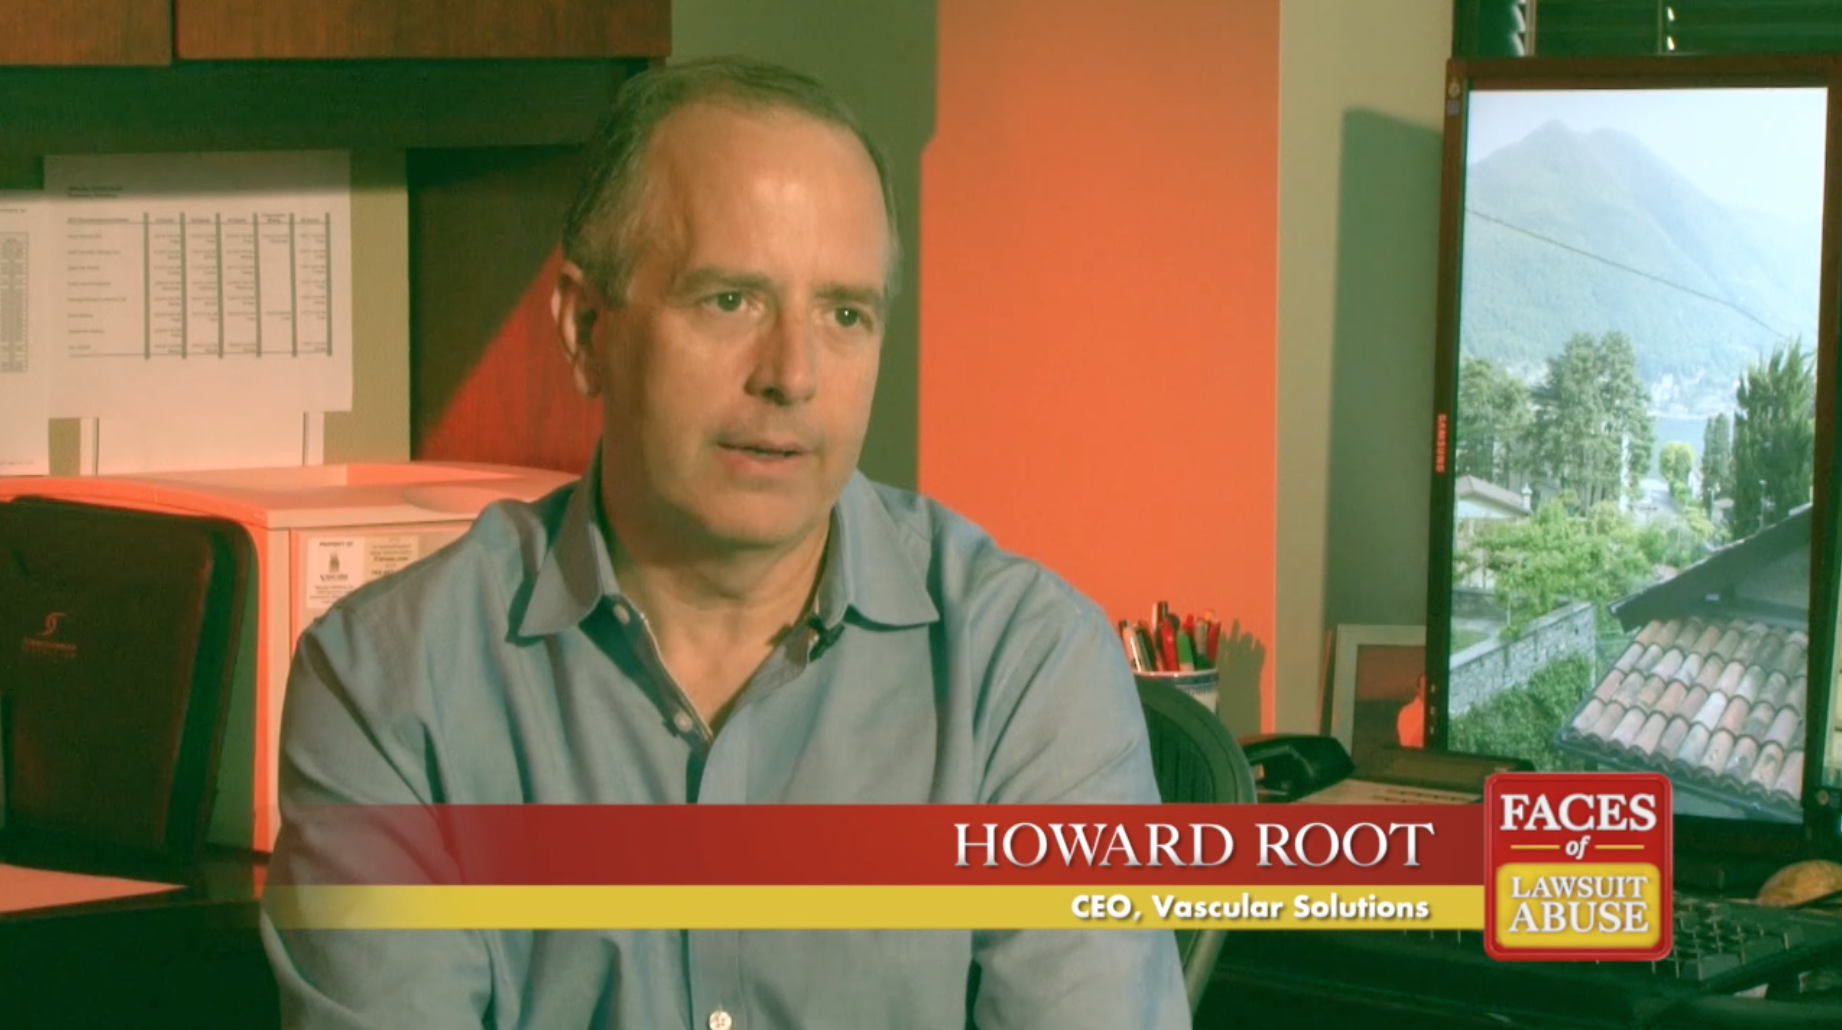 Howard Root, Vascular Solutions